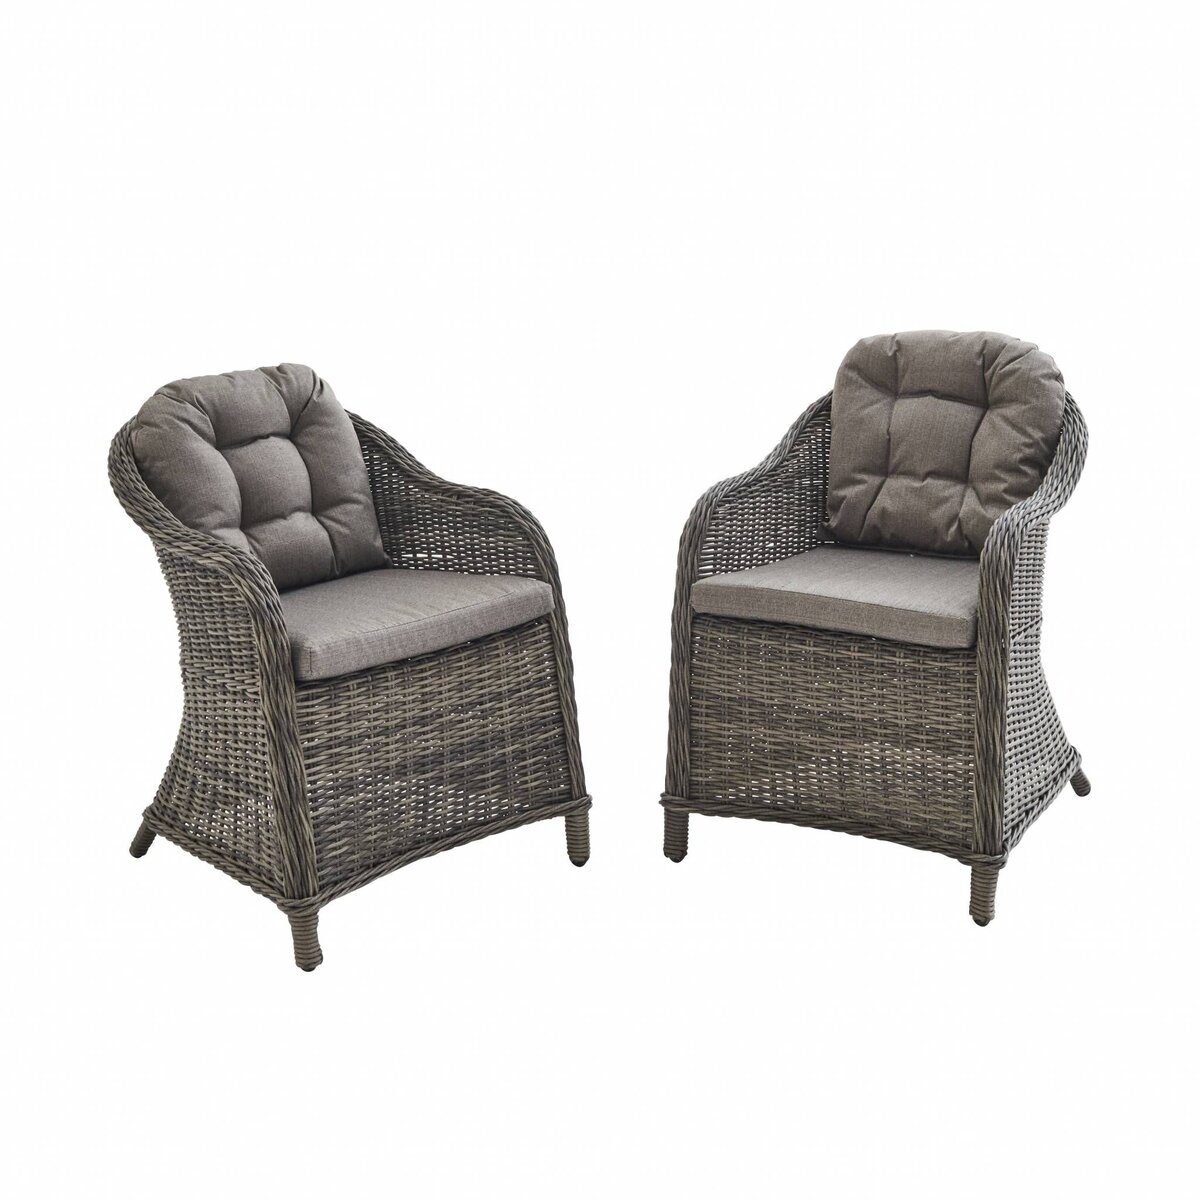  Lot de 2 fauteuils en résine tressée arrondie - Lecco - Coussins , chaises, structure aluminium